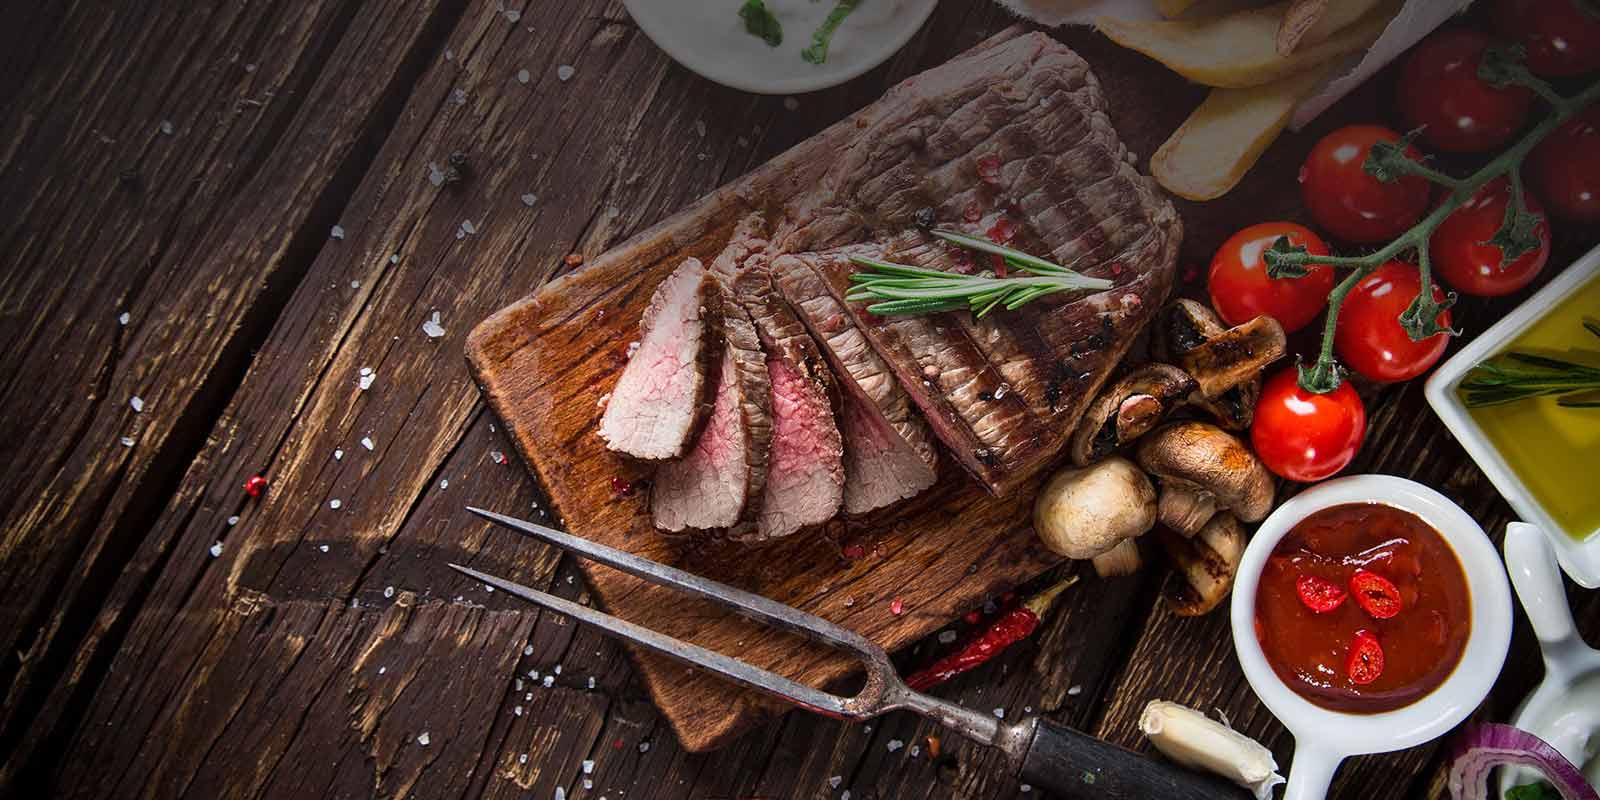 Yeni Zelanda`dan Greenlea eti Greenlea, %100 otla beslenen en iyi sigir etini uretmekten gurur duymaktadir.